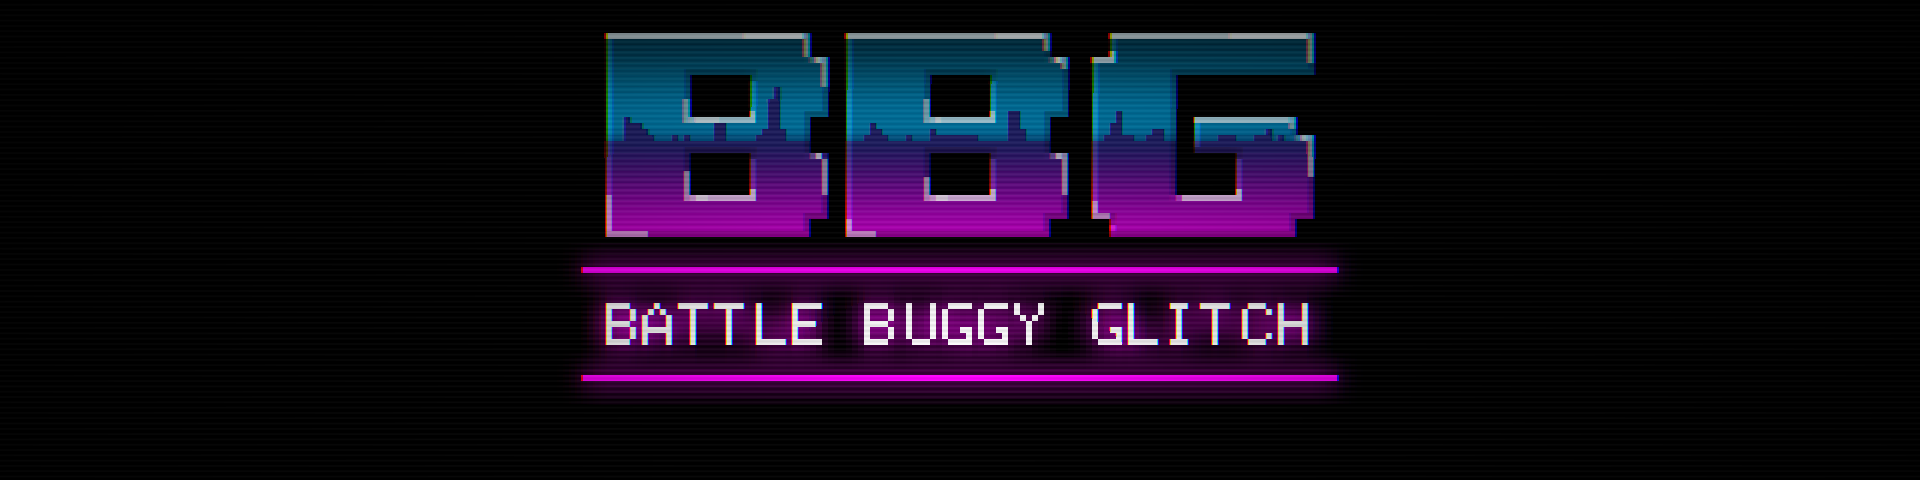 Battle Buggy Glitch (Demo)